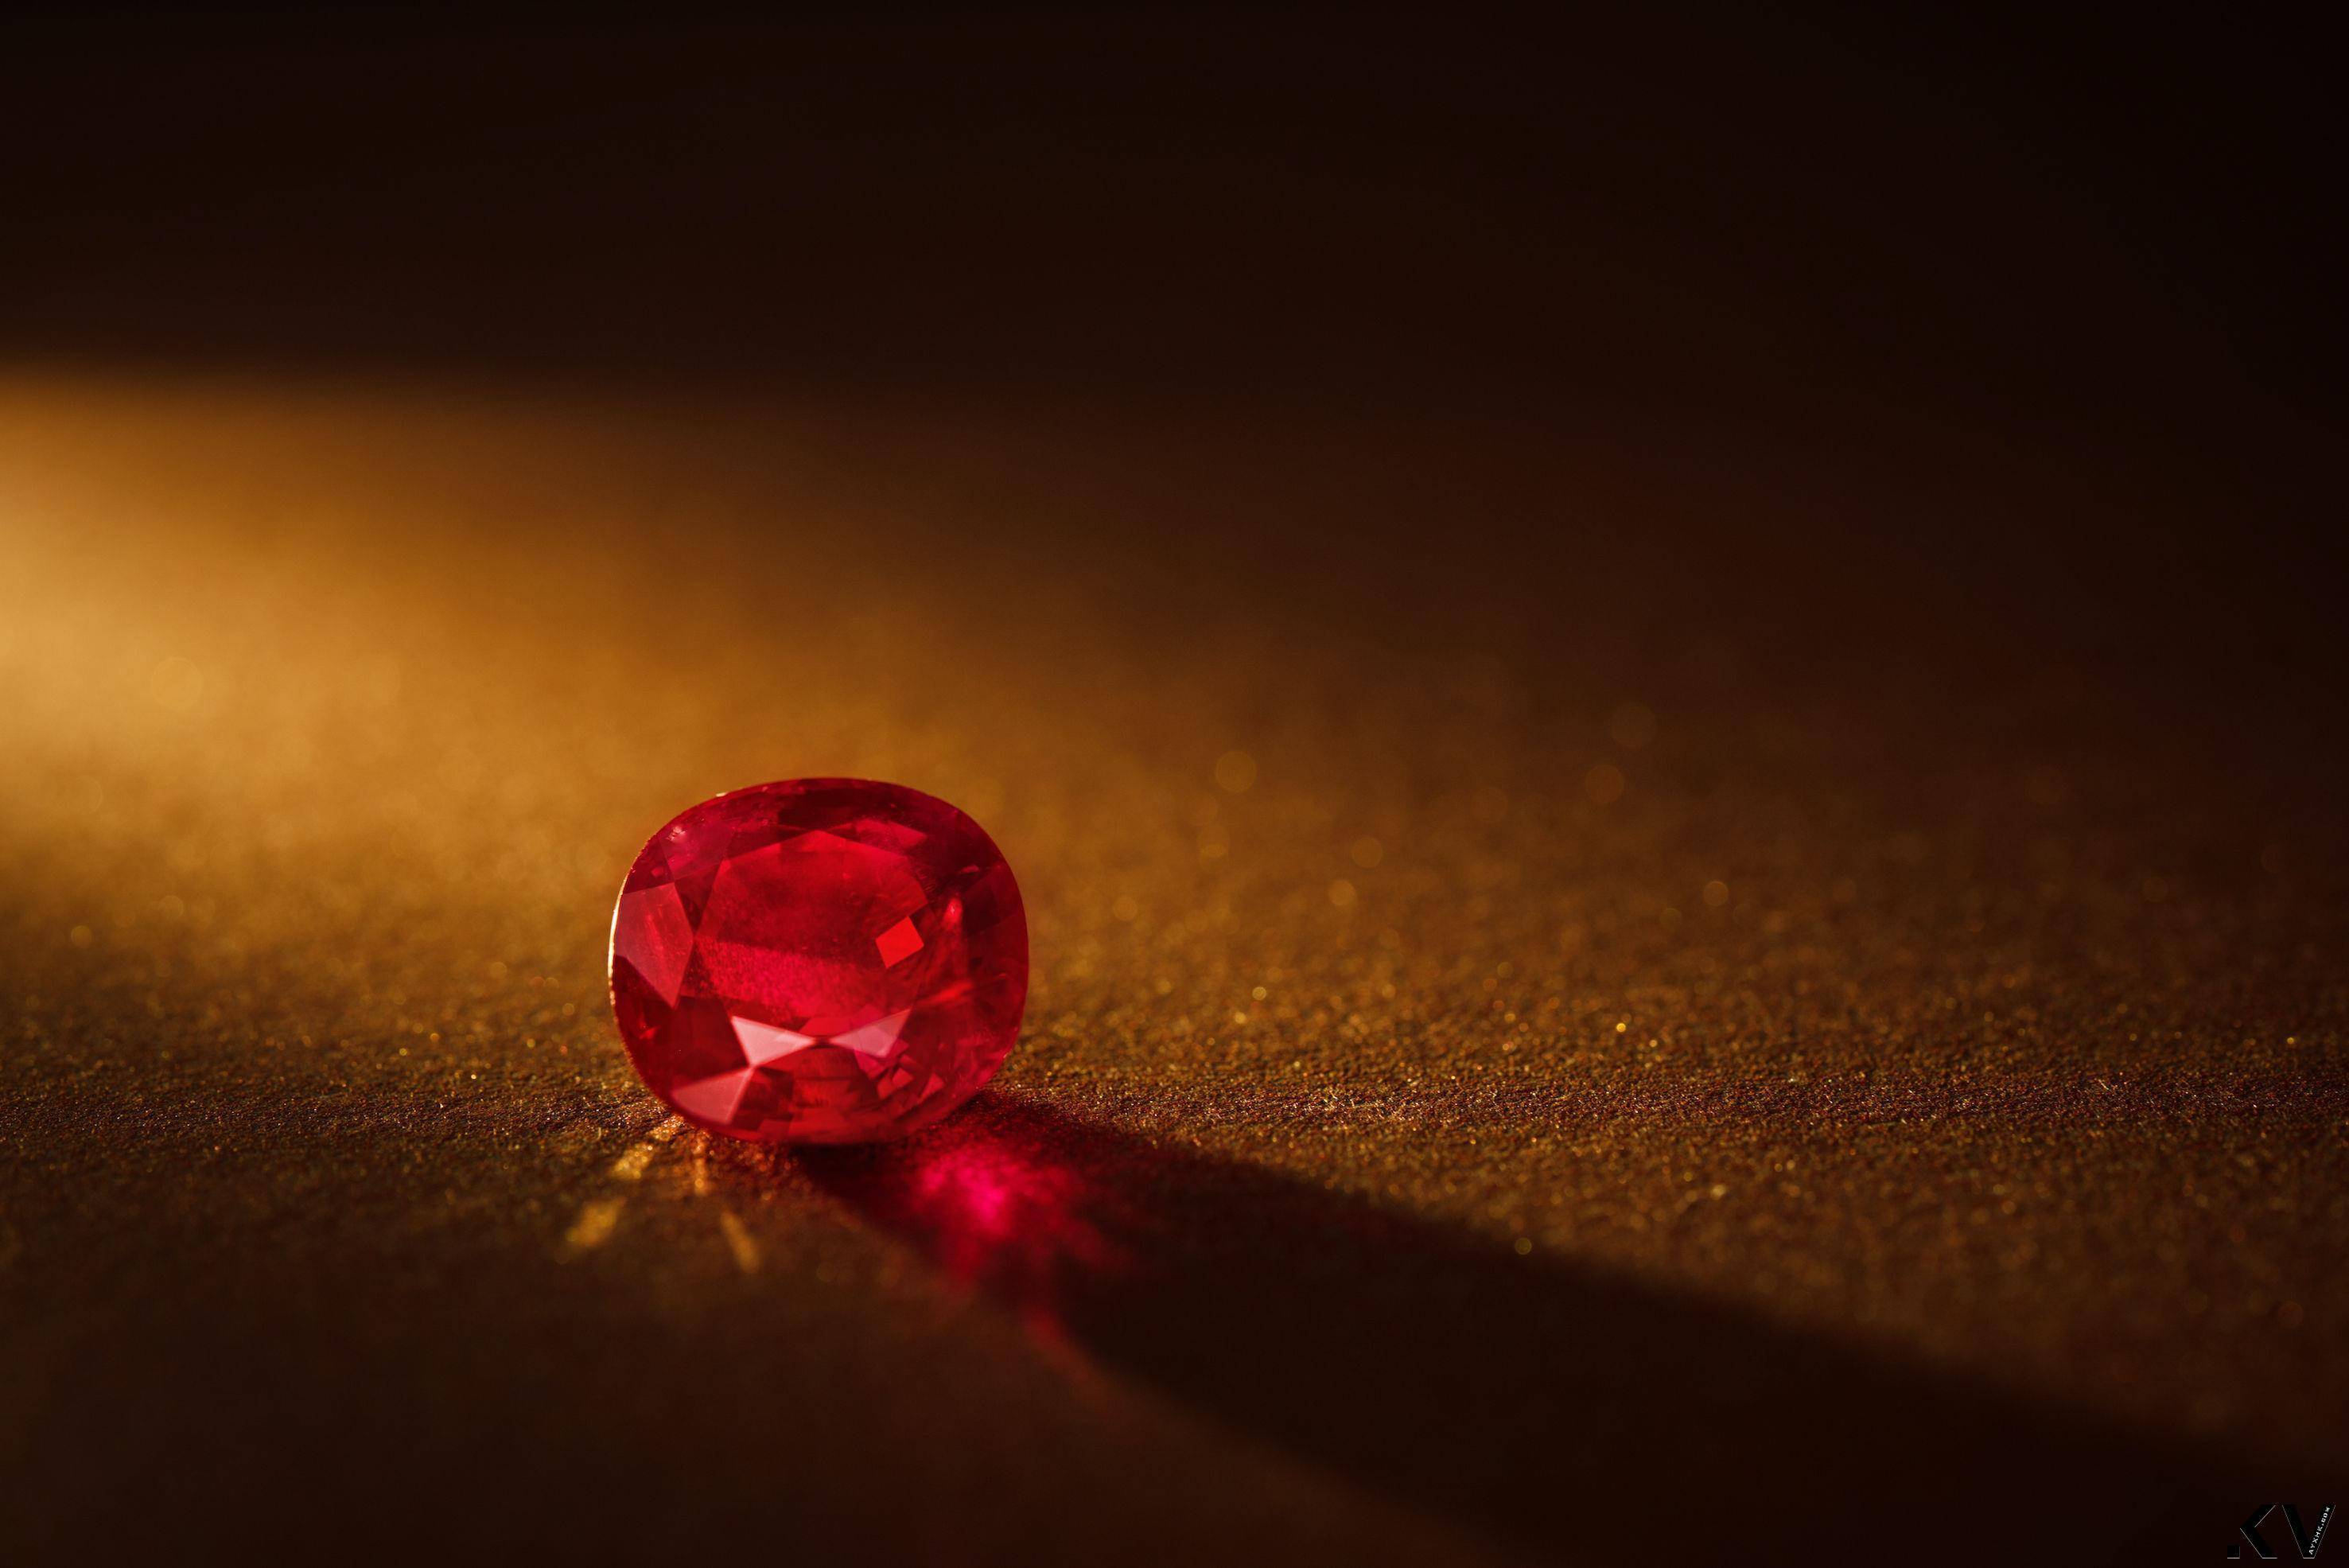 安海瑟薇也爱巨无霸宝石　Diamond Bank展出122克拉蓝宝、天价3.4亿红宝 最新资讯 图4张